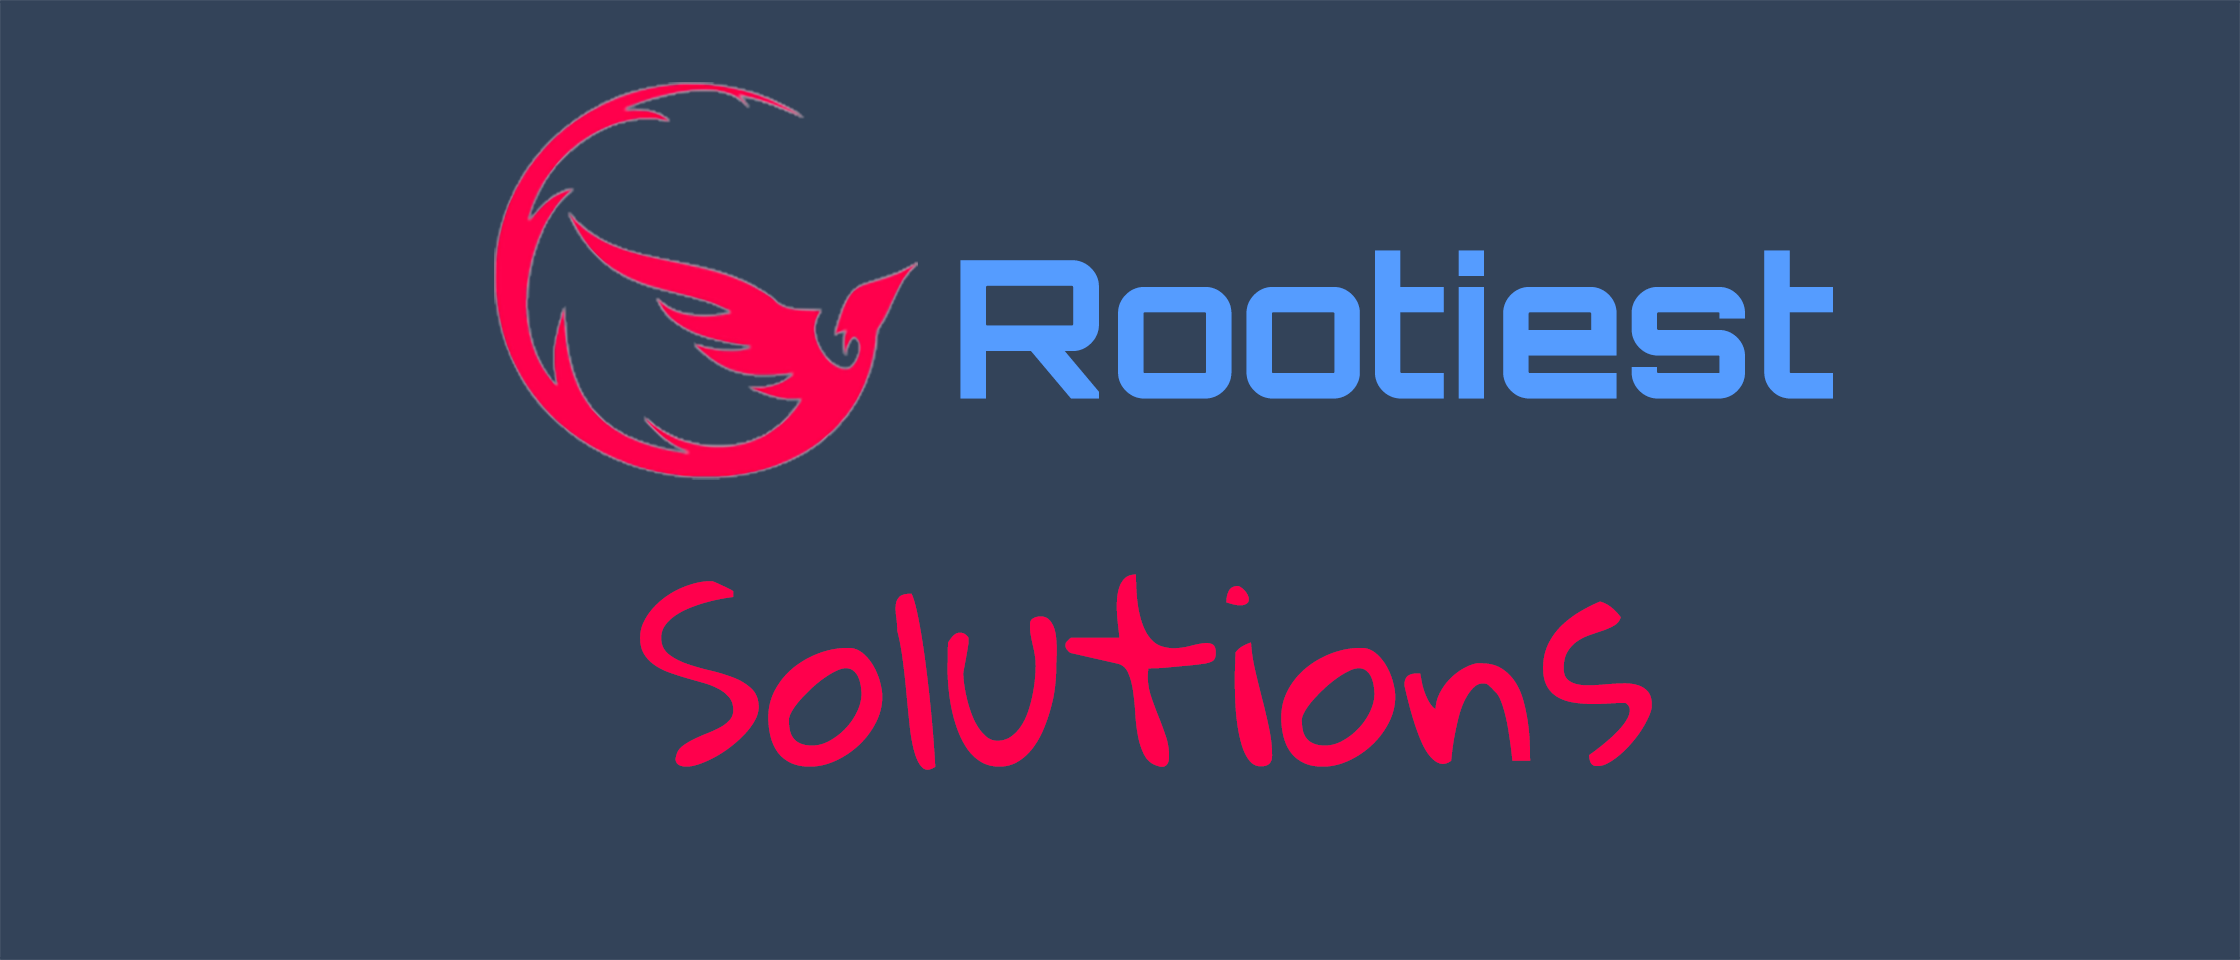 Rootiest Solutions